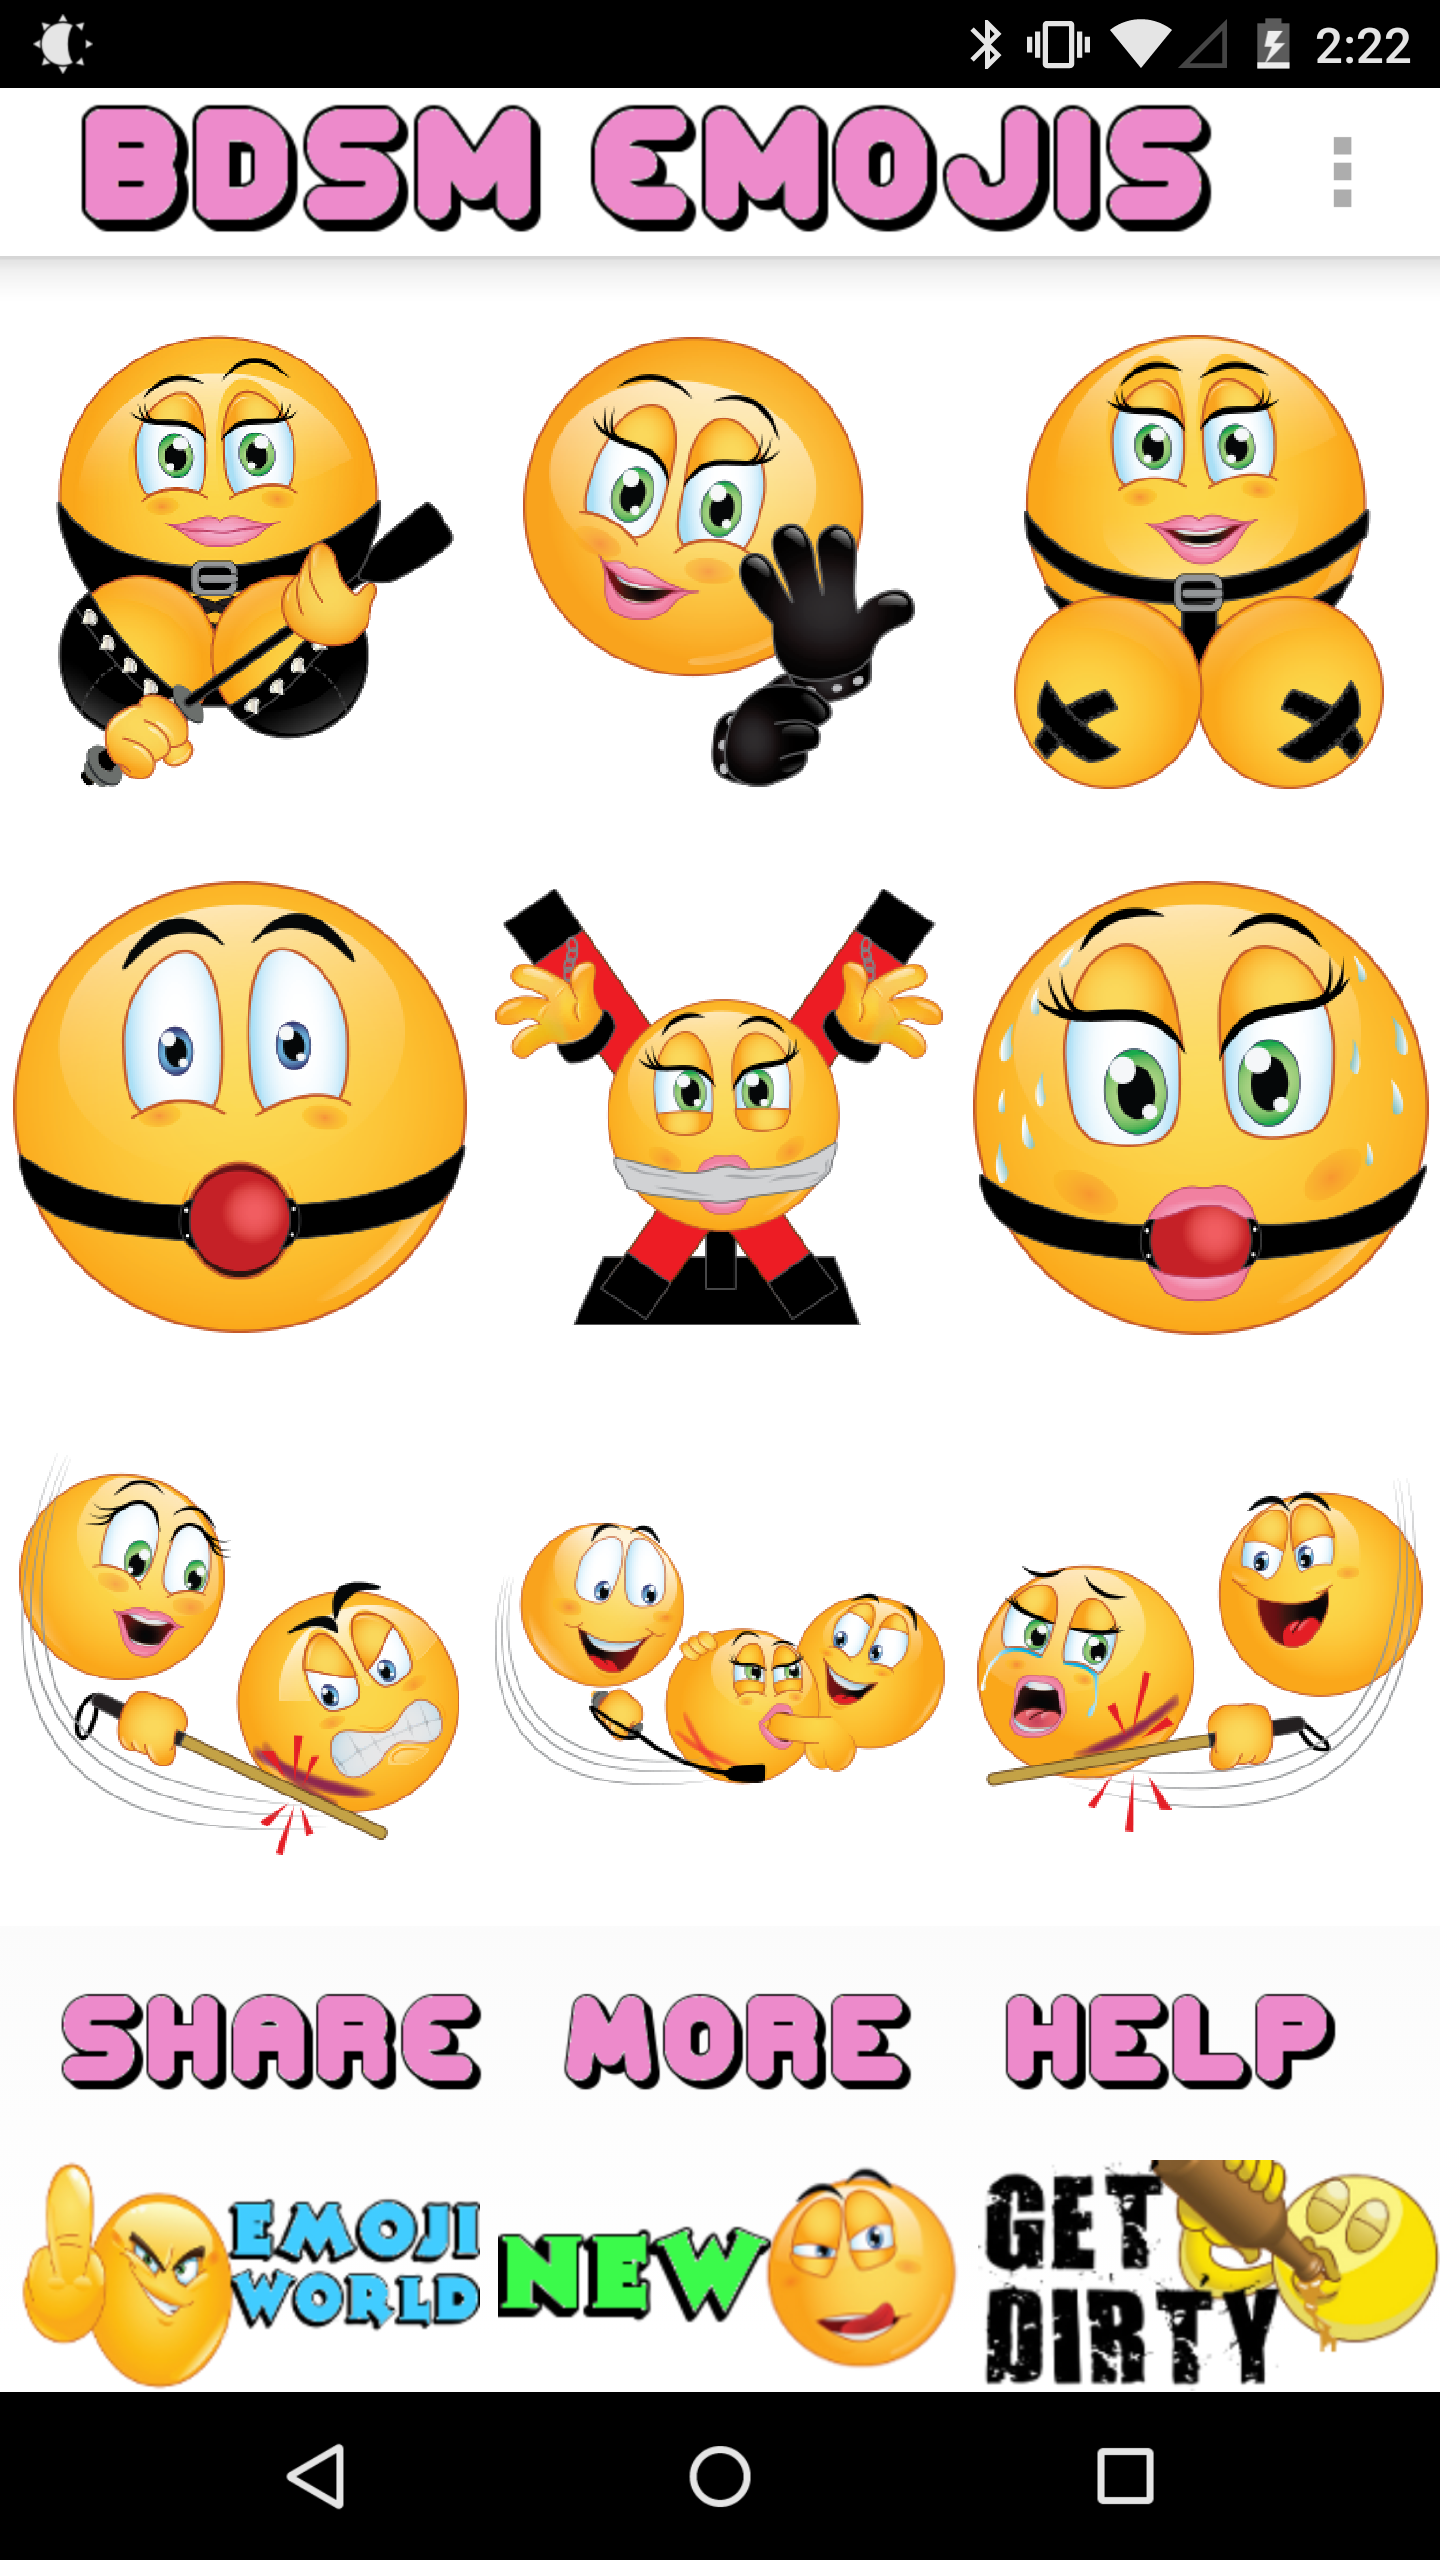 Bdsm emojis